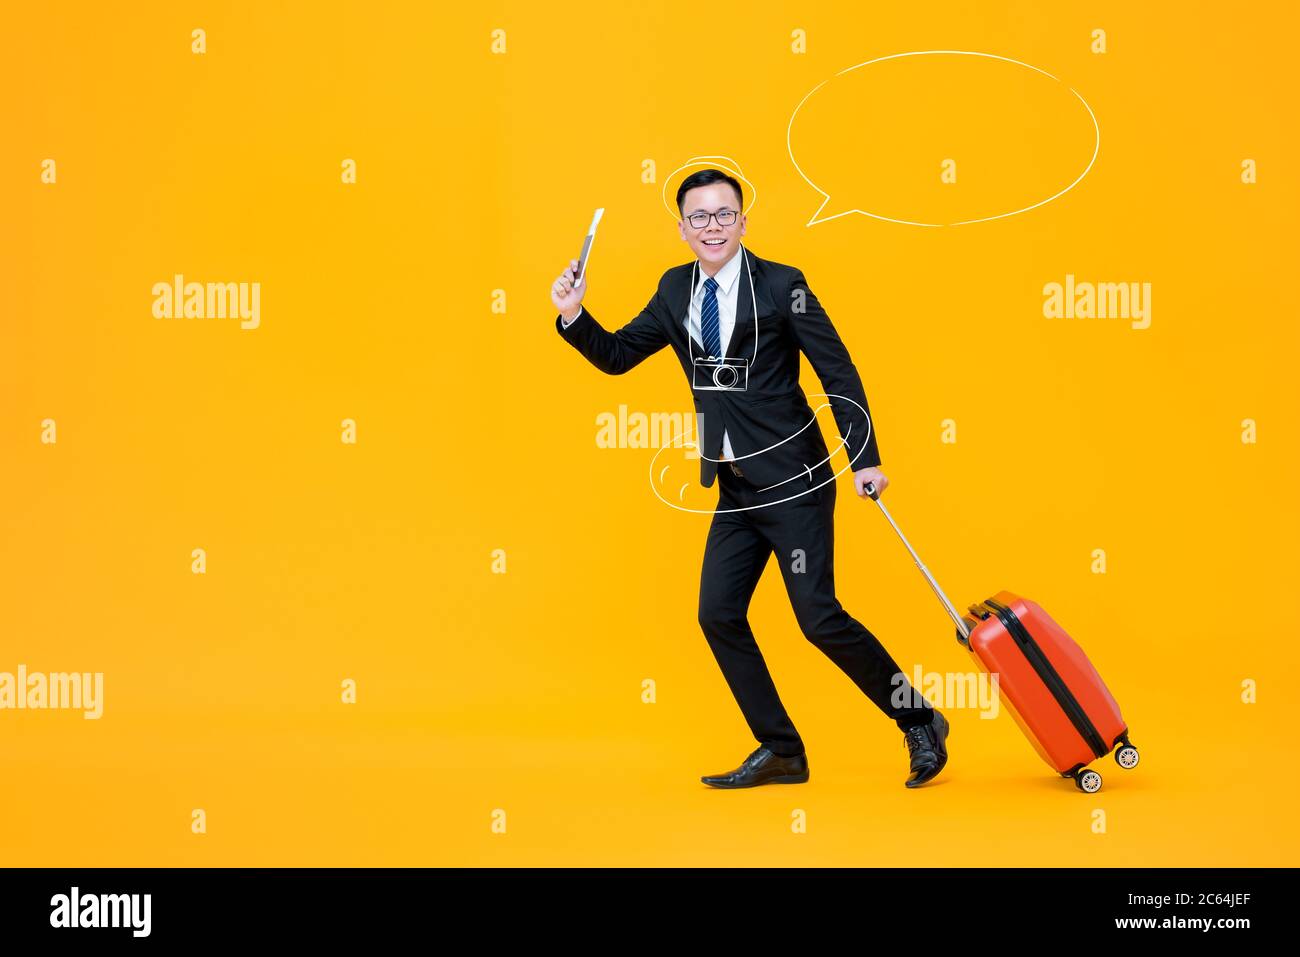 Spaß Arbeit Leben Balance Konzept Porträt des lächelnden jungen asiatischen Geschäftsmann Gepäck in isolierten Studio gelben Hintergrund Stockfoto